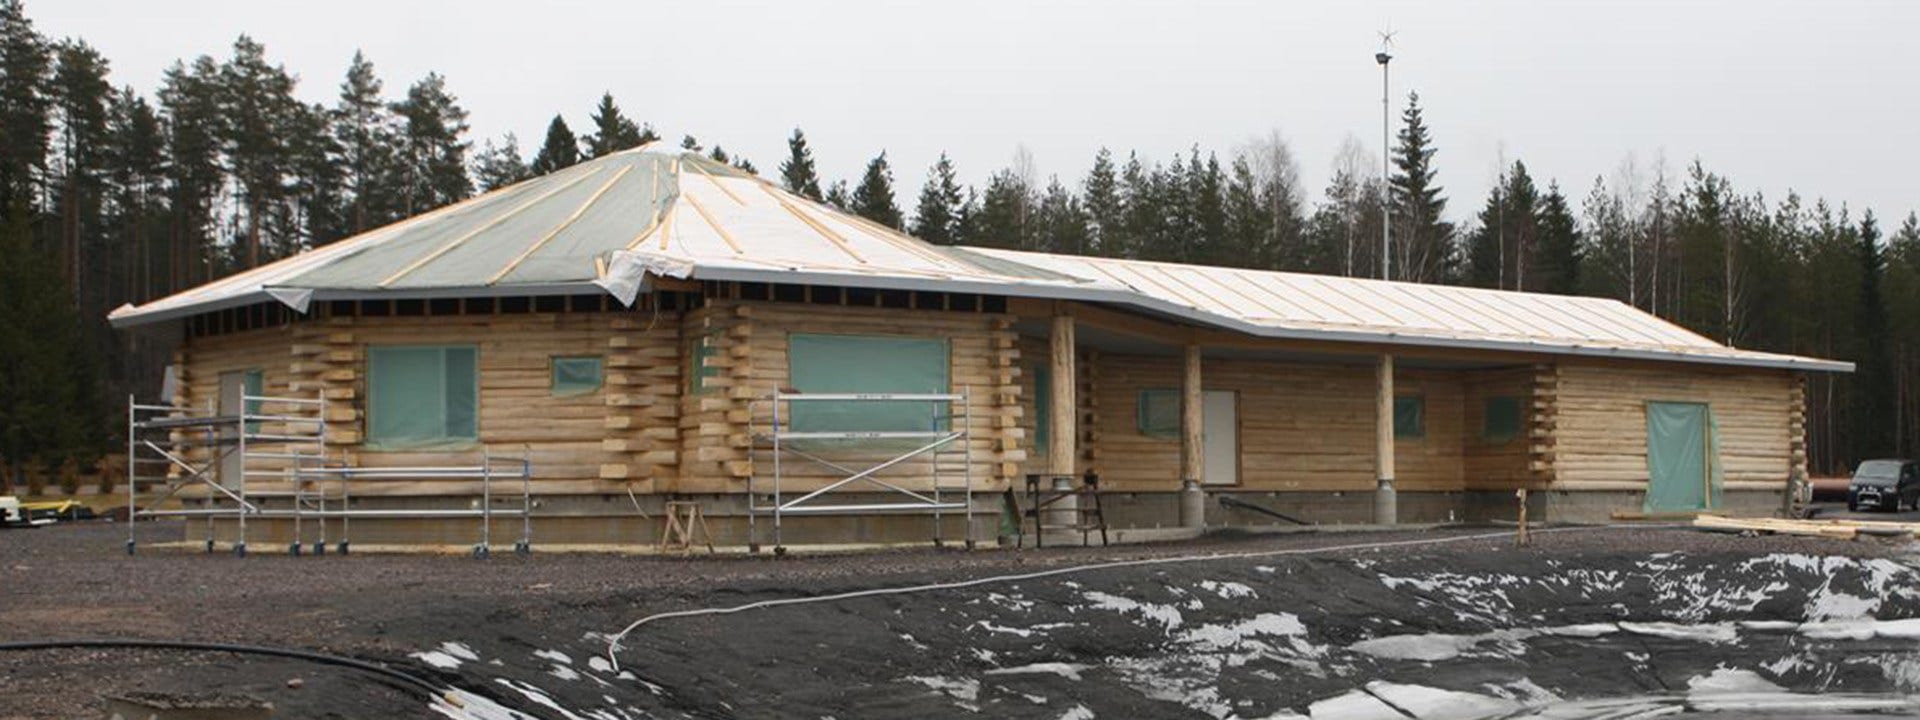 An Aspen Timber Octagonal House in Finland